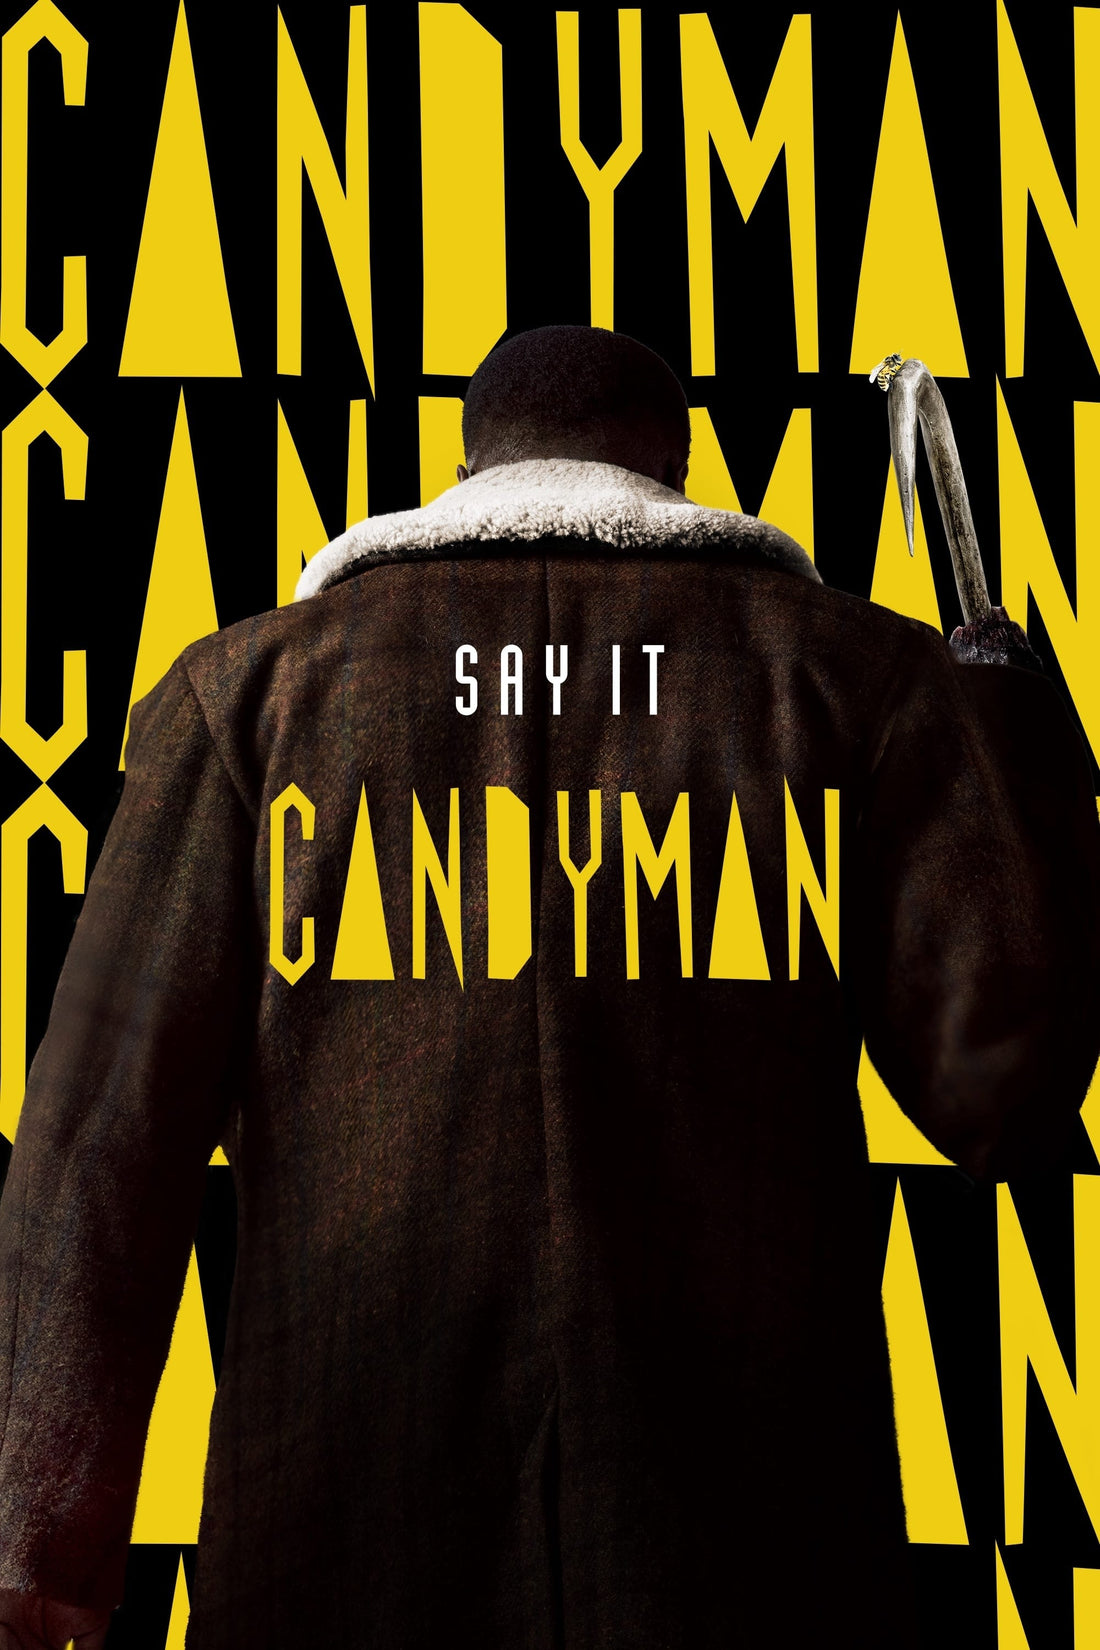 Candyman (2021 film) - Wikipedia